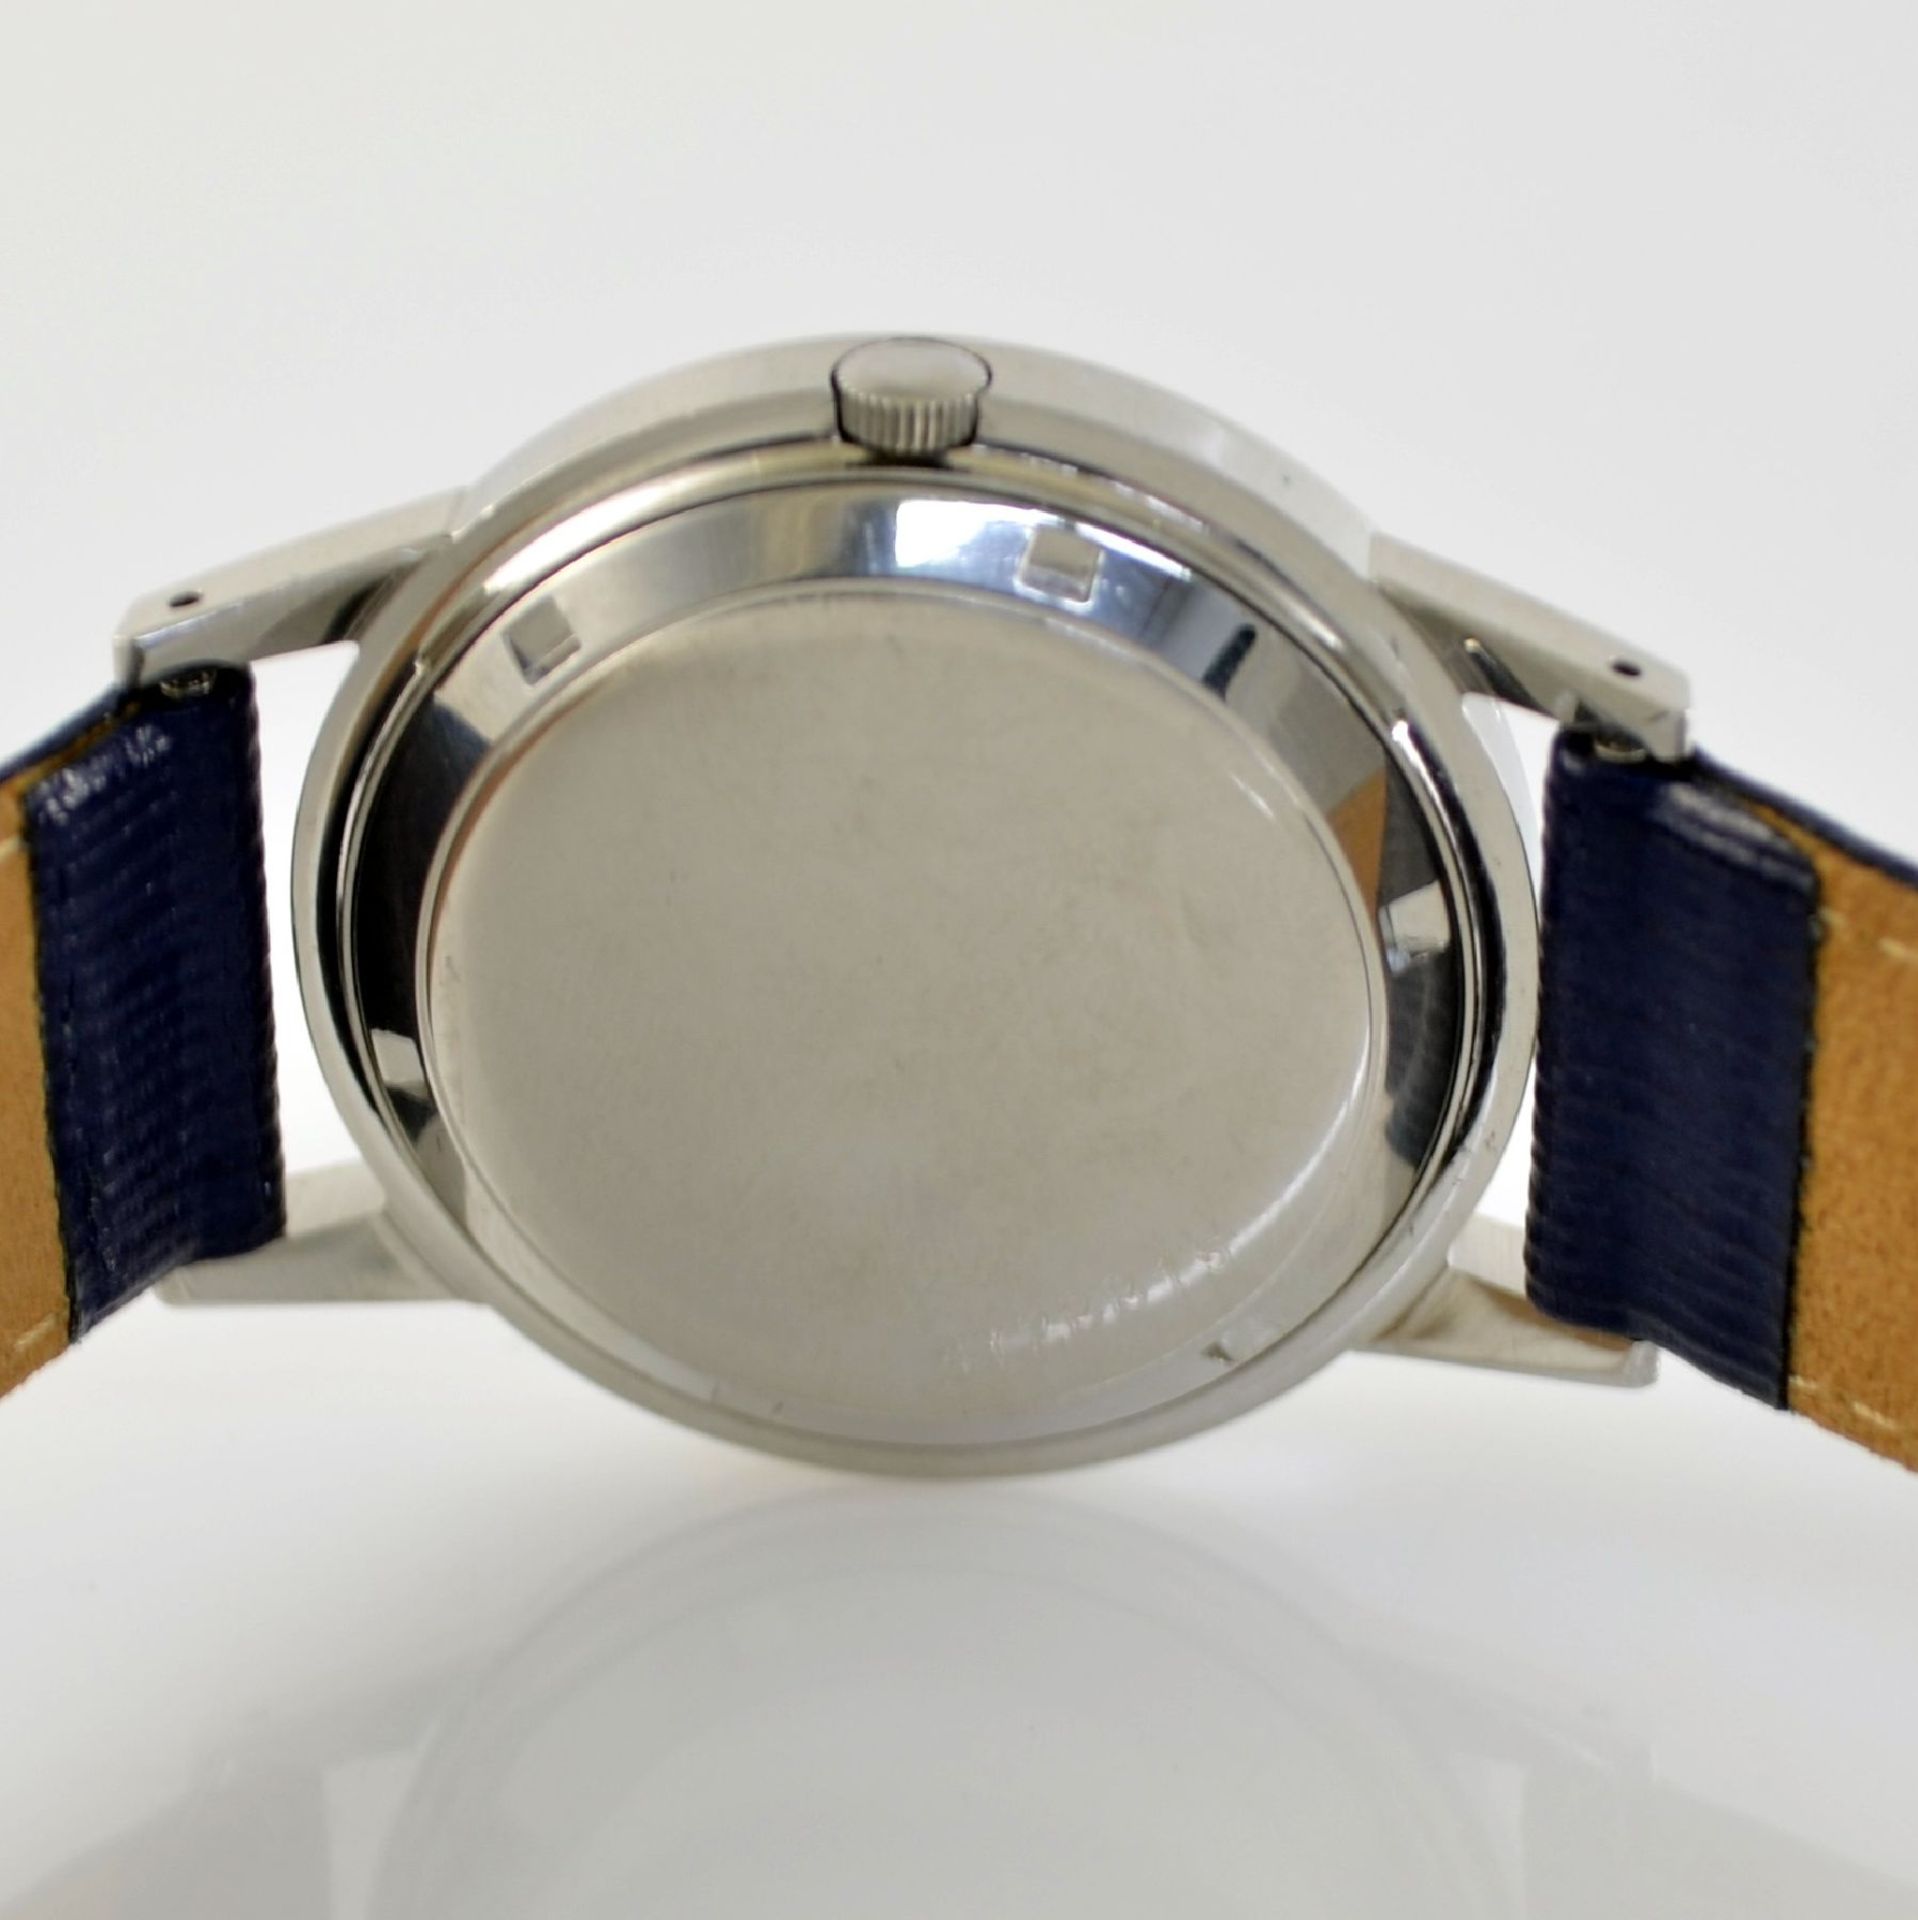 ETERNA-MATIC 2 wristwatches in steel, Switzerland around 1955, case backs screwed down, silvered - Bild 4 aus 12